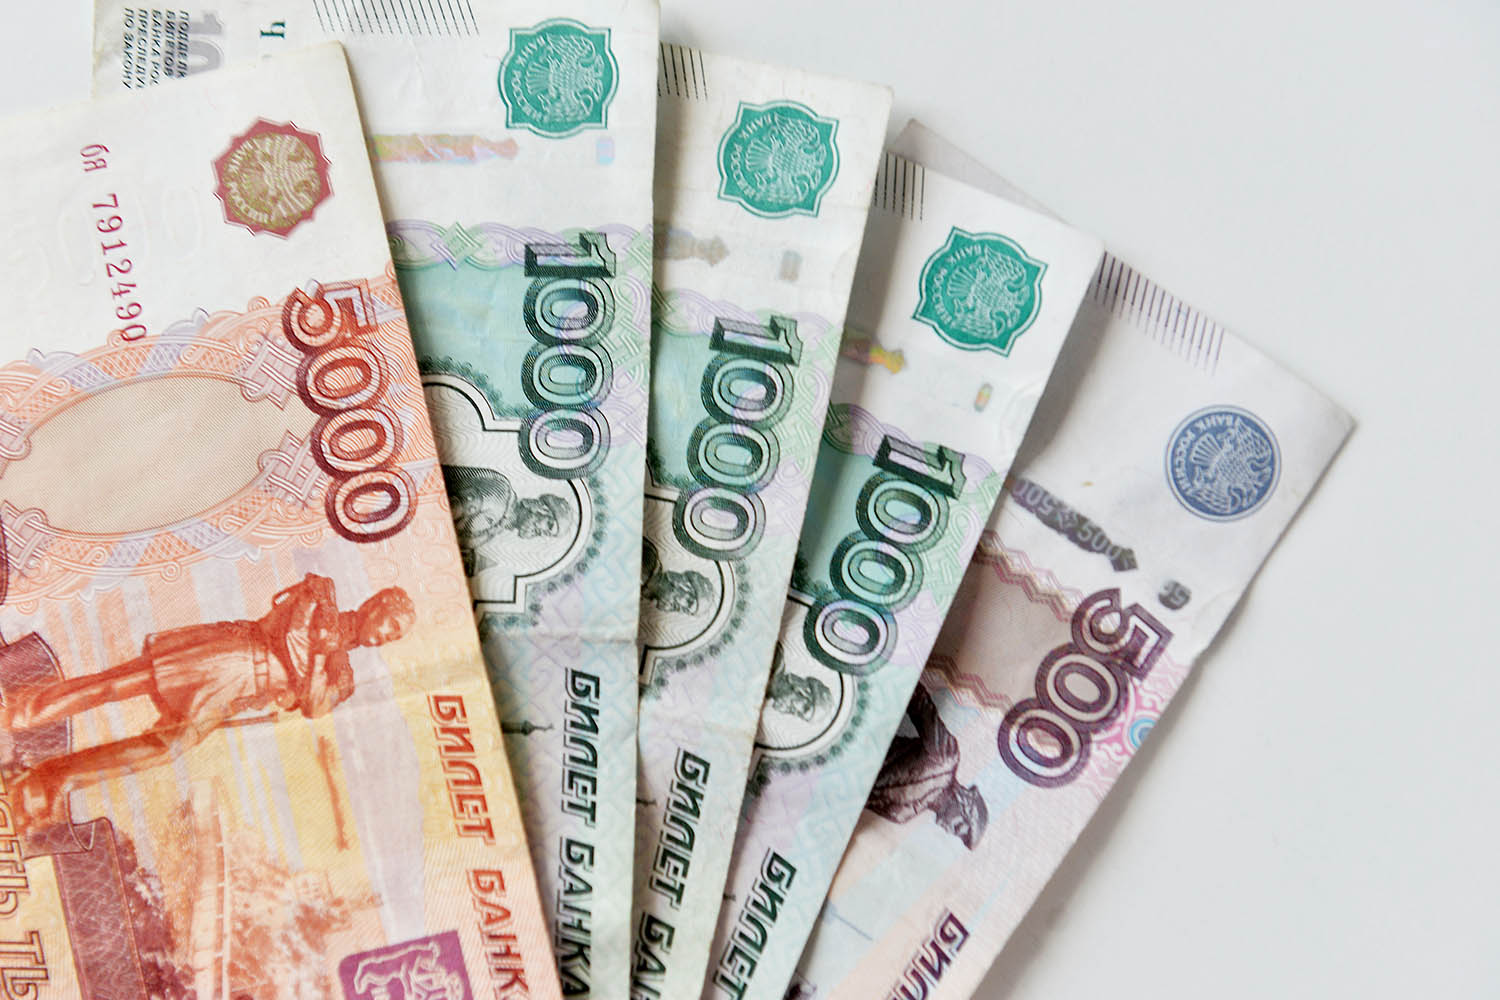 Эксперты позитивно оценили снижение ставки по льготным инвесткредитам в Москве